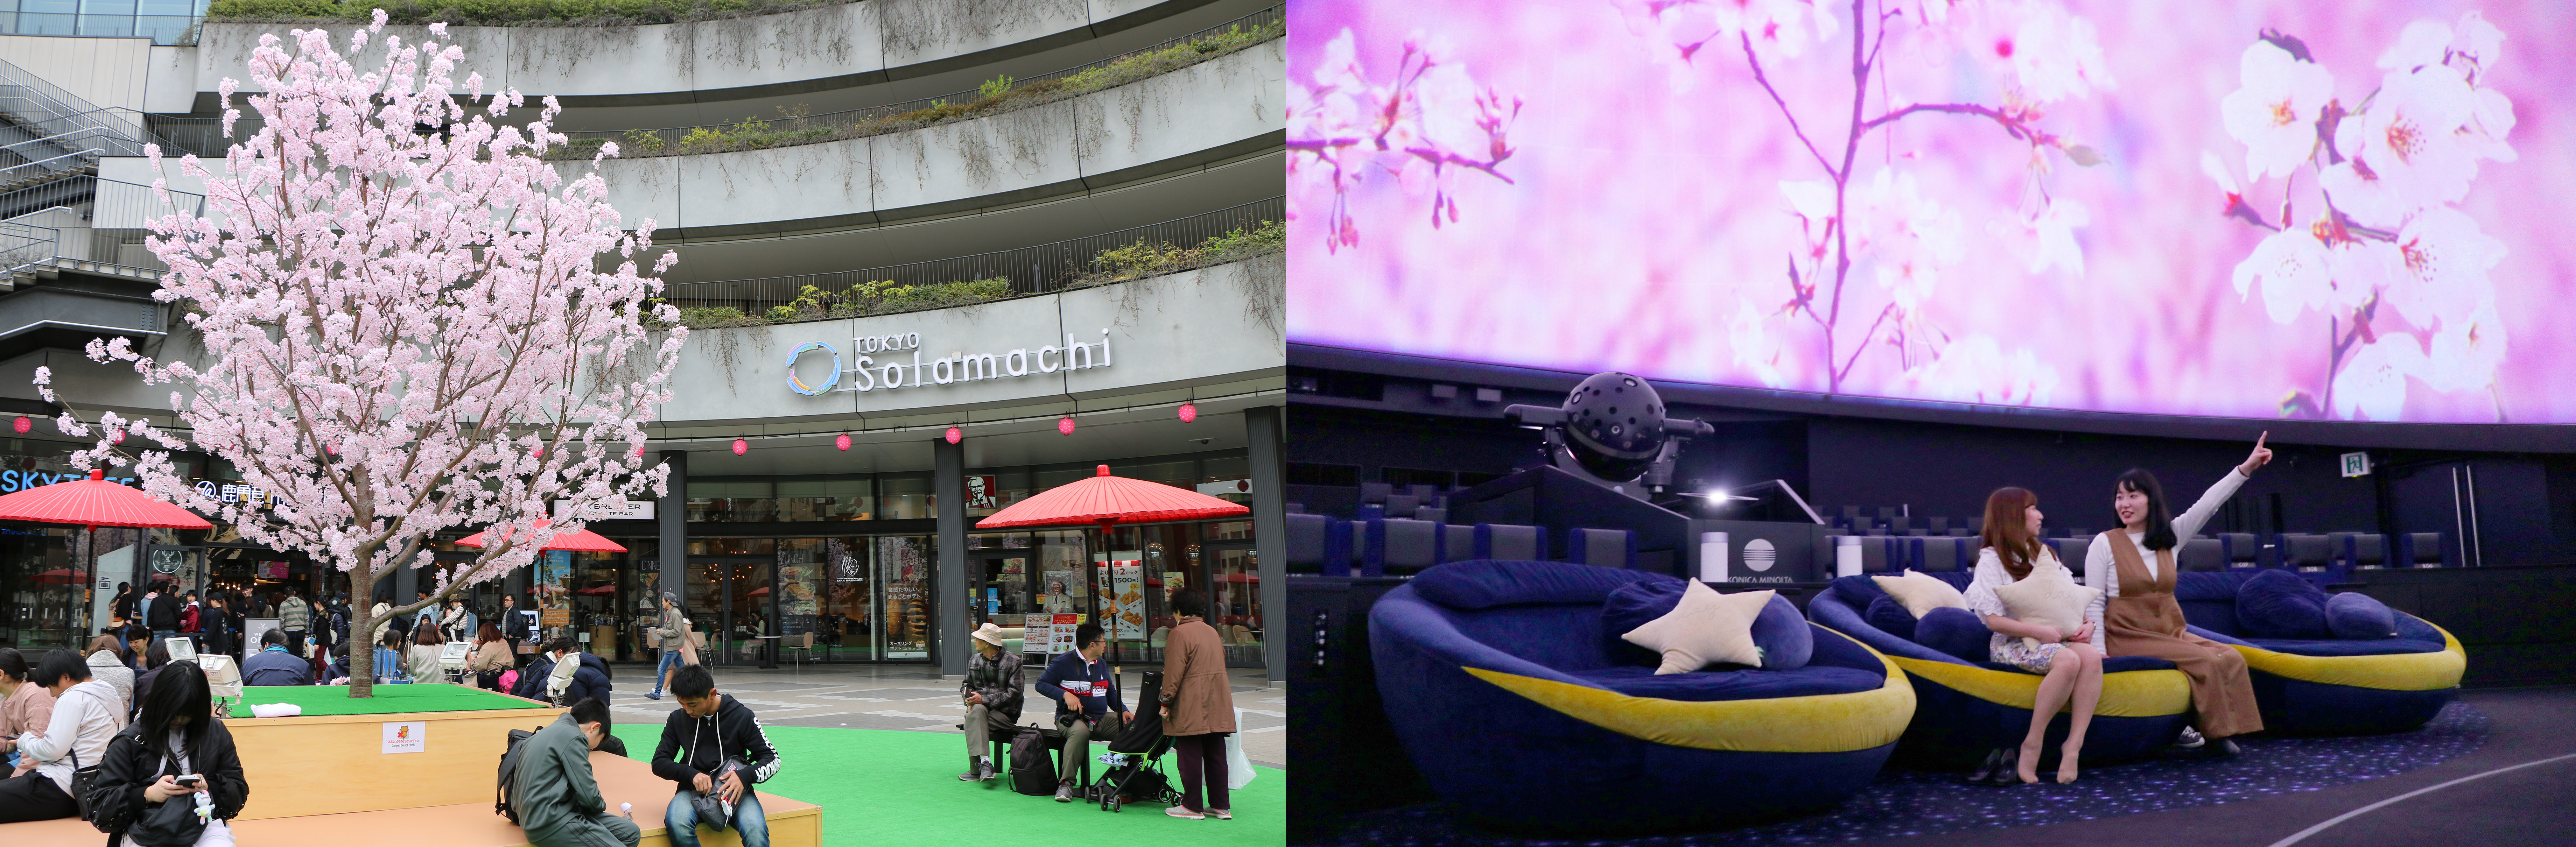 東京スカイツリータウン R の春休み ｇｗイベント 桜をイメージした東京スカイツリーの特別ライティングを点灯 桜 モチーフの限定メニュー スイーツも販売 東京スカイツリータウンのプレスリリース